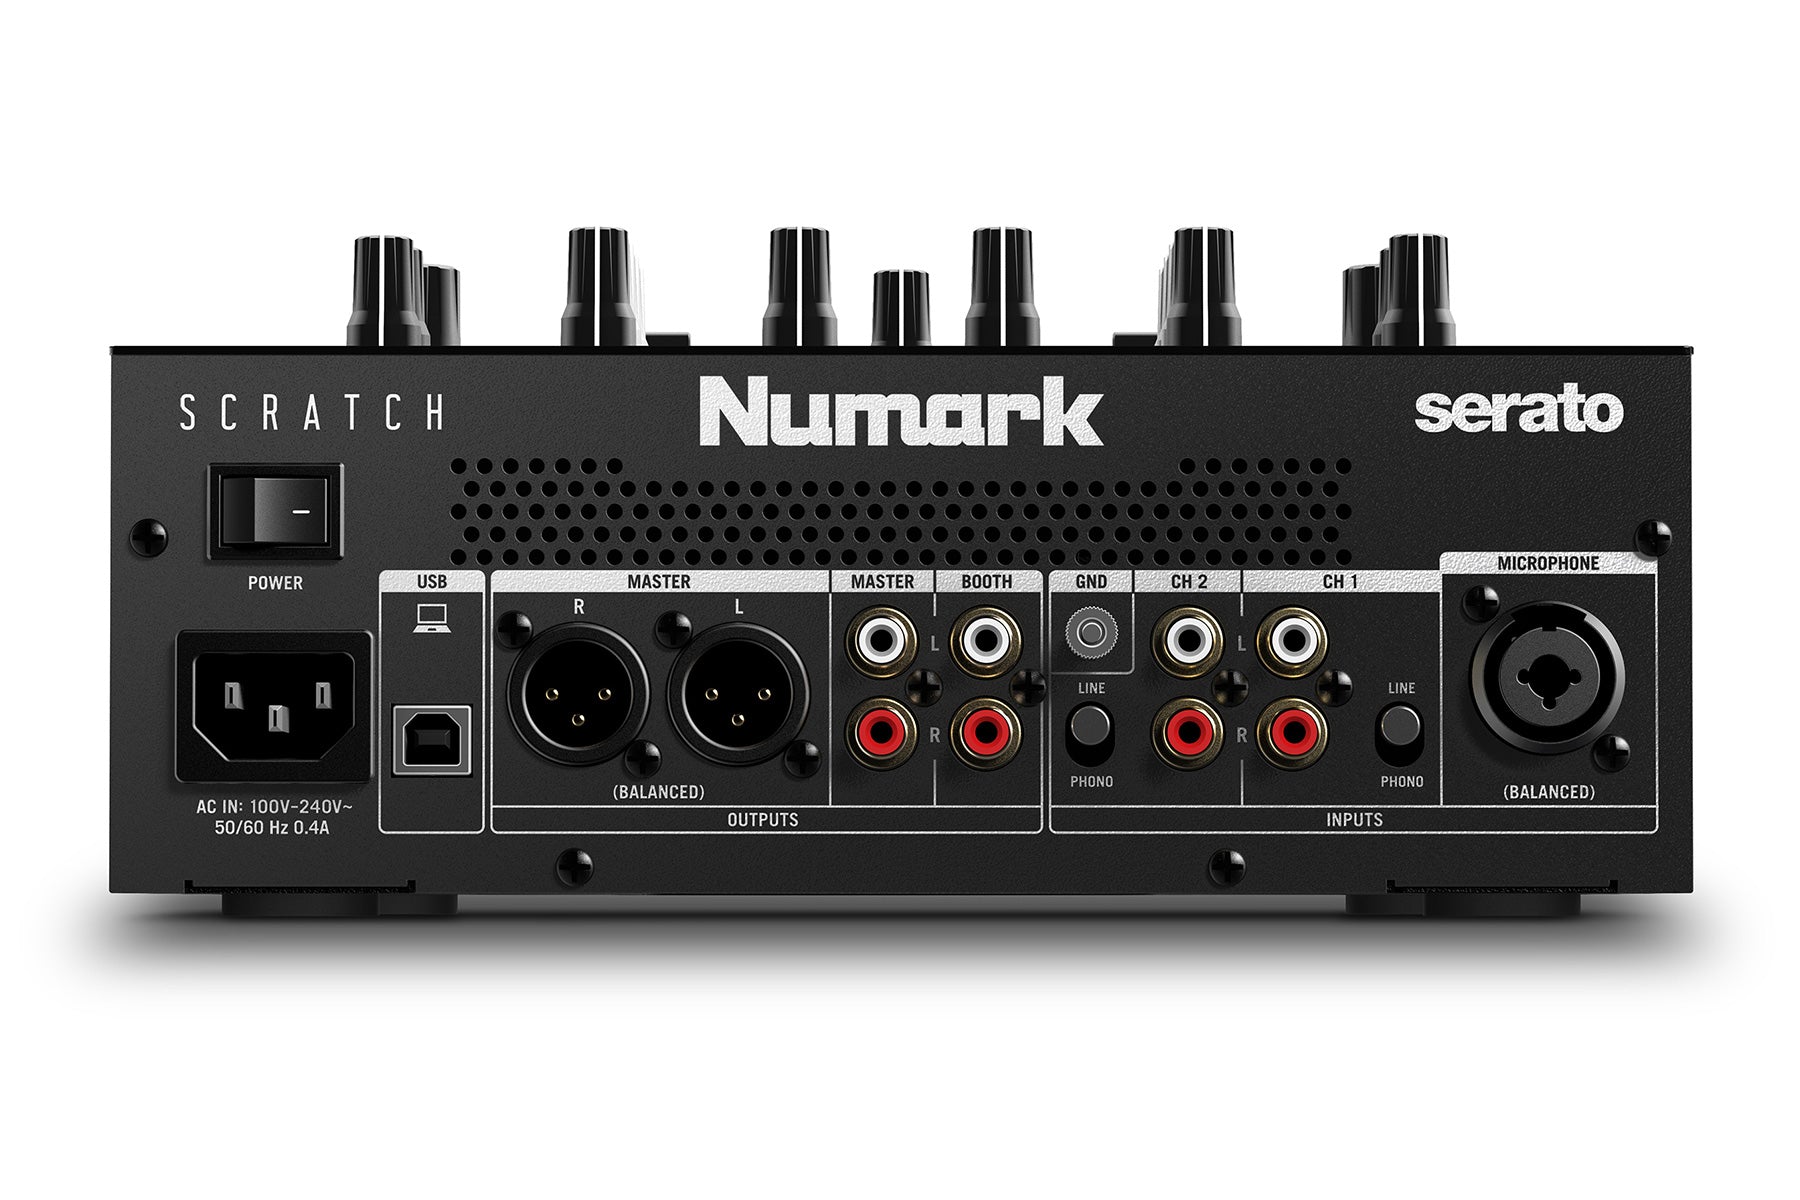 Numark Scratch 2ch Mixer with Inno-fader & Serato